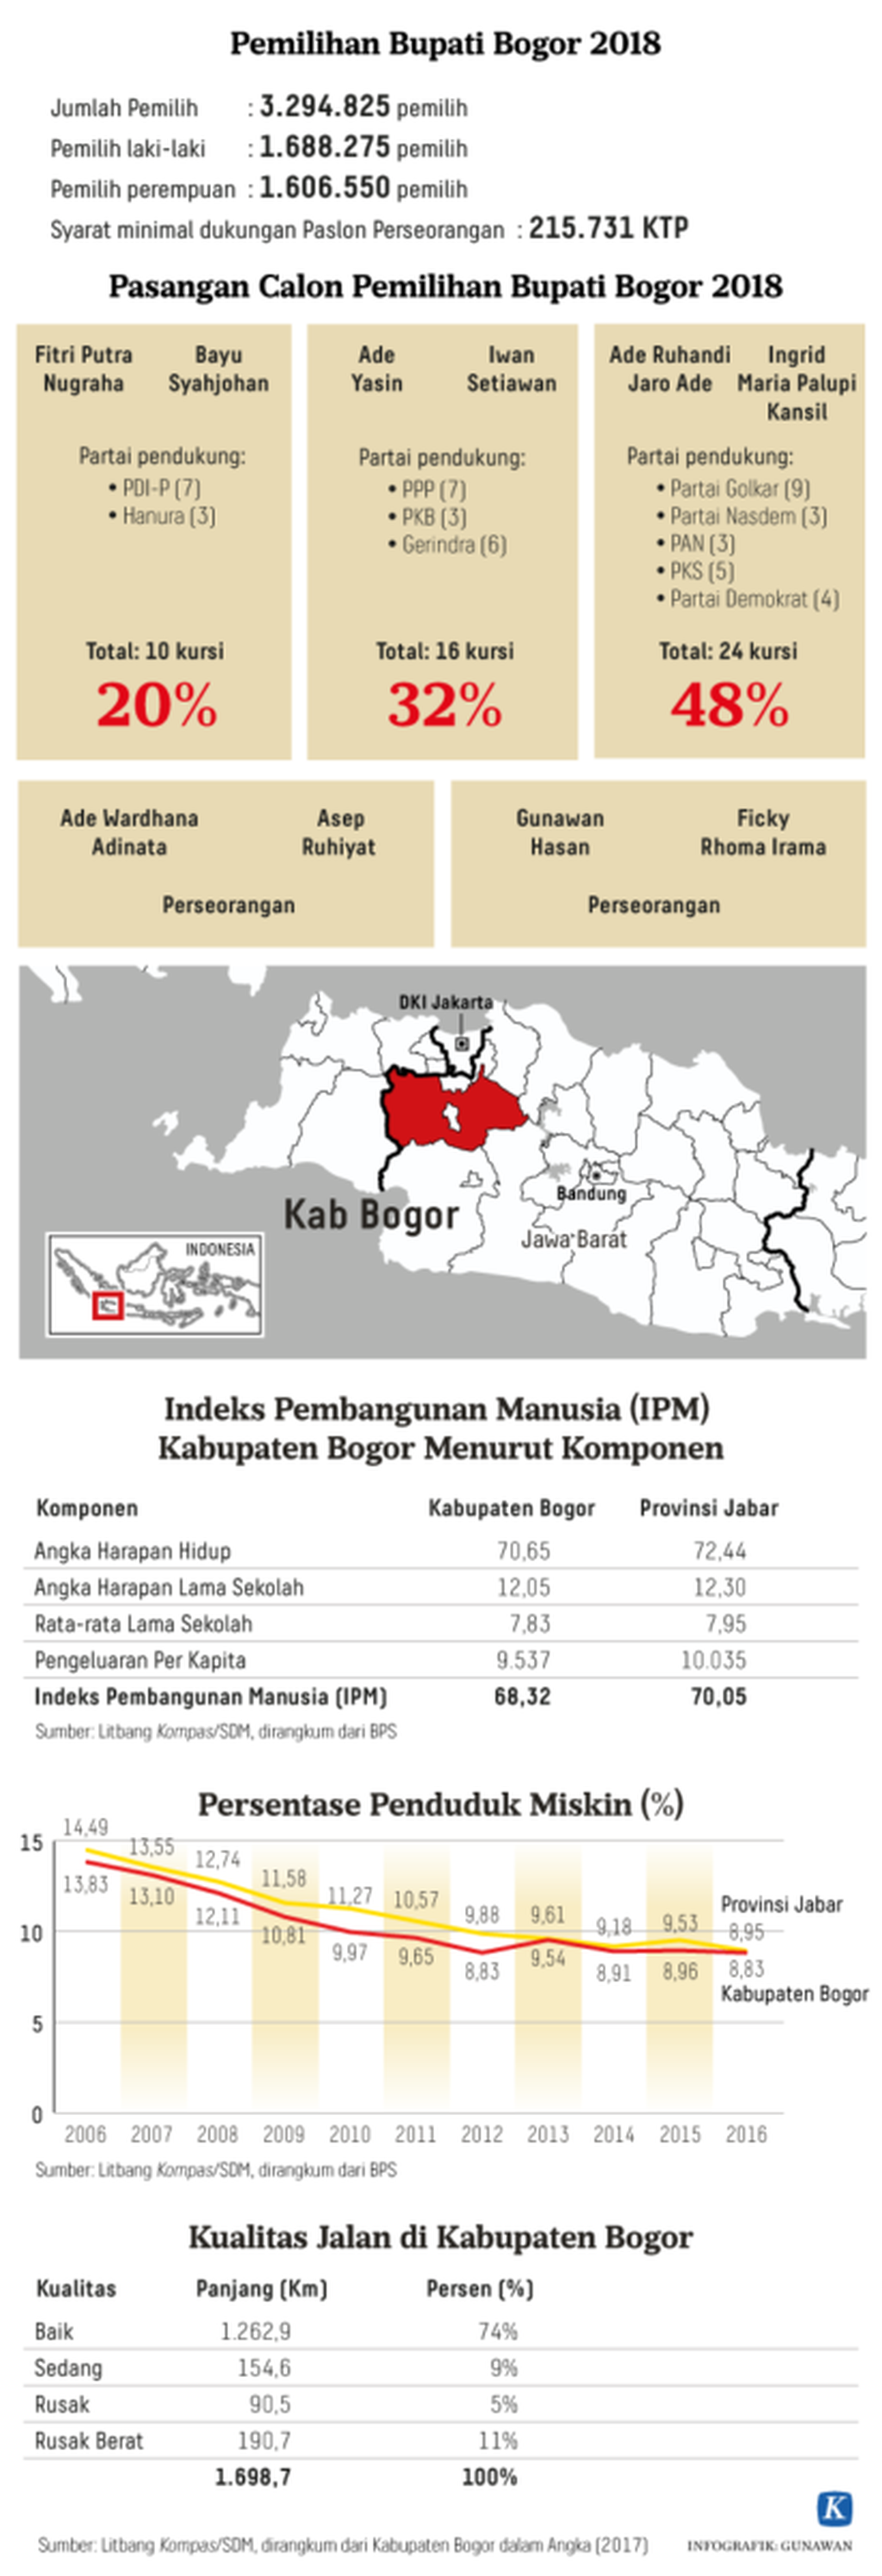 https://cdn-assetd.kompas.id/h_yrkH1gxAkXkVc6QwsyKAbV0KA=/1024x2990/https%3A%2F%2Fkompas.id%2Fwp-content%2Fuploads%2F2018%2F06%2F20180627_GKT_Pilkada-Kabupaten-Bogor-2018-Kompas-ID-Mumed-W.png